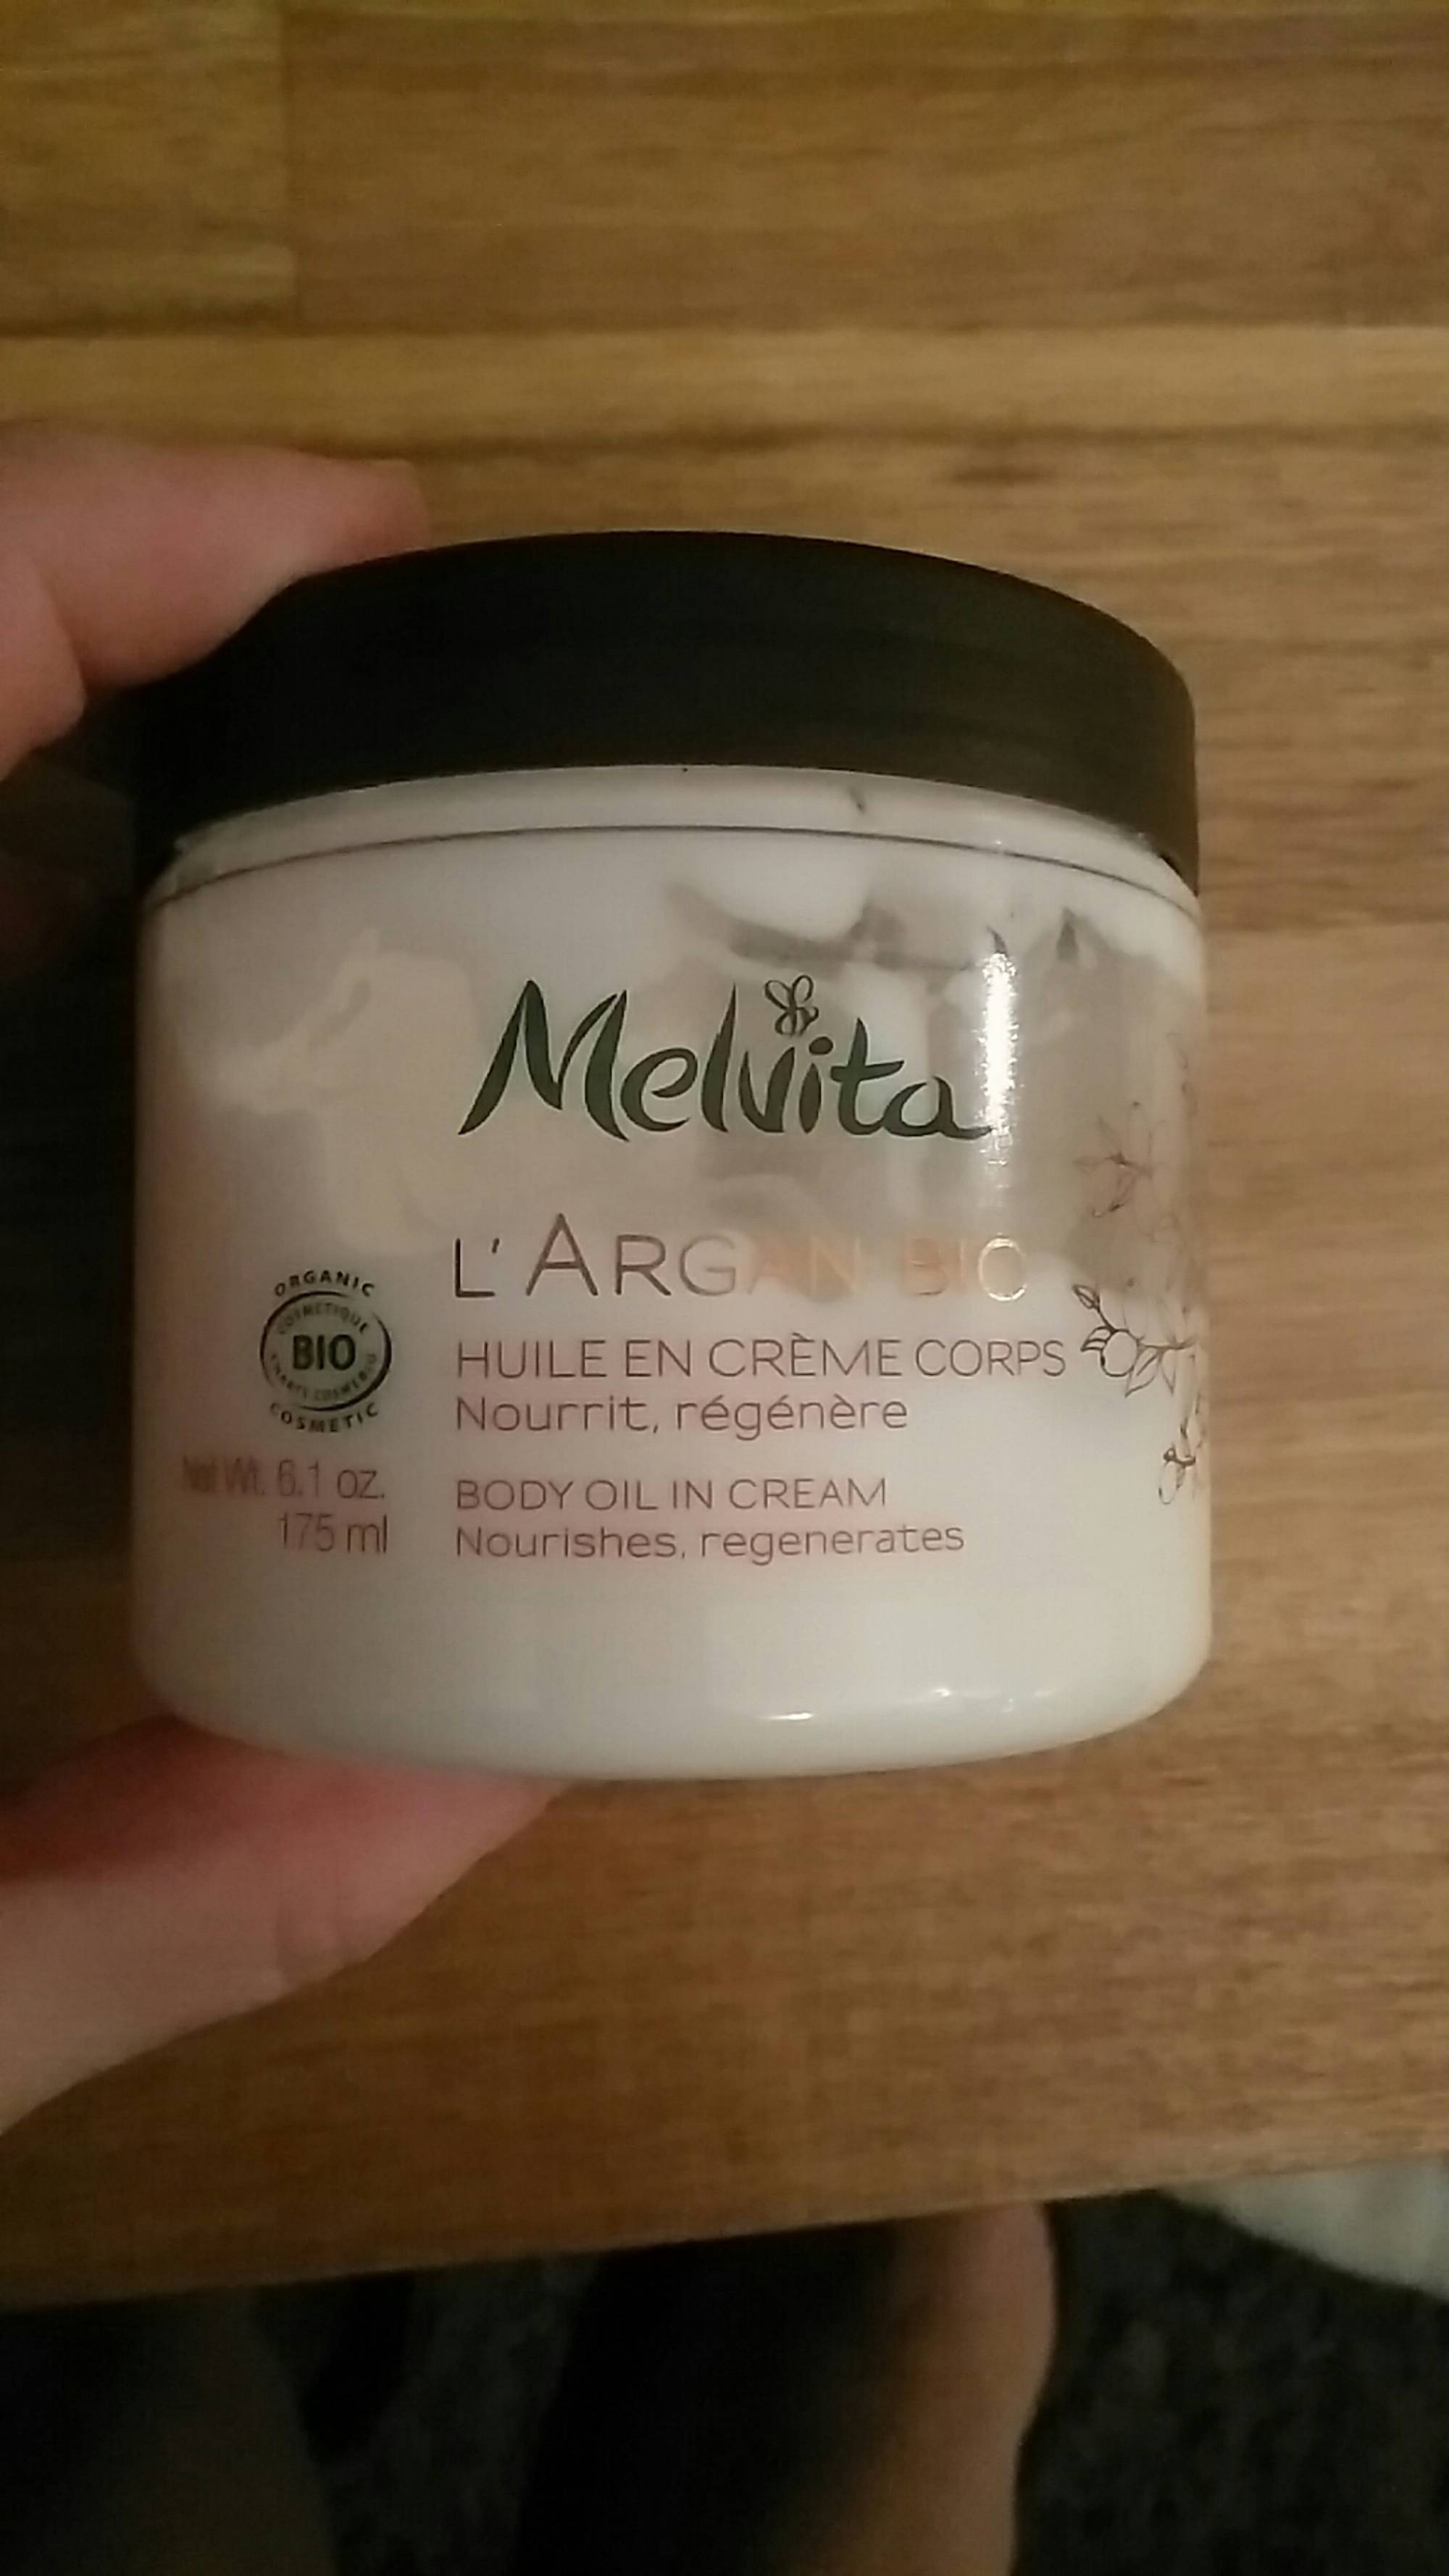 MELVITA - L'Argan bio - Huile en crème corps